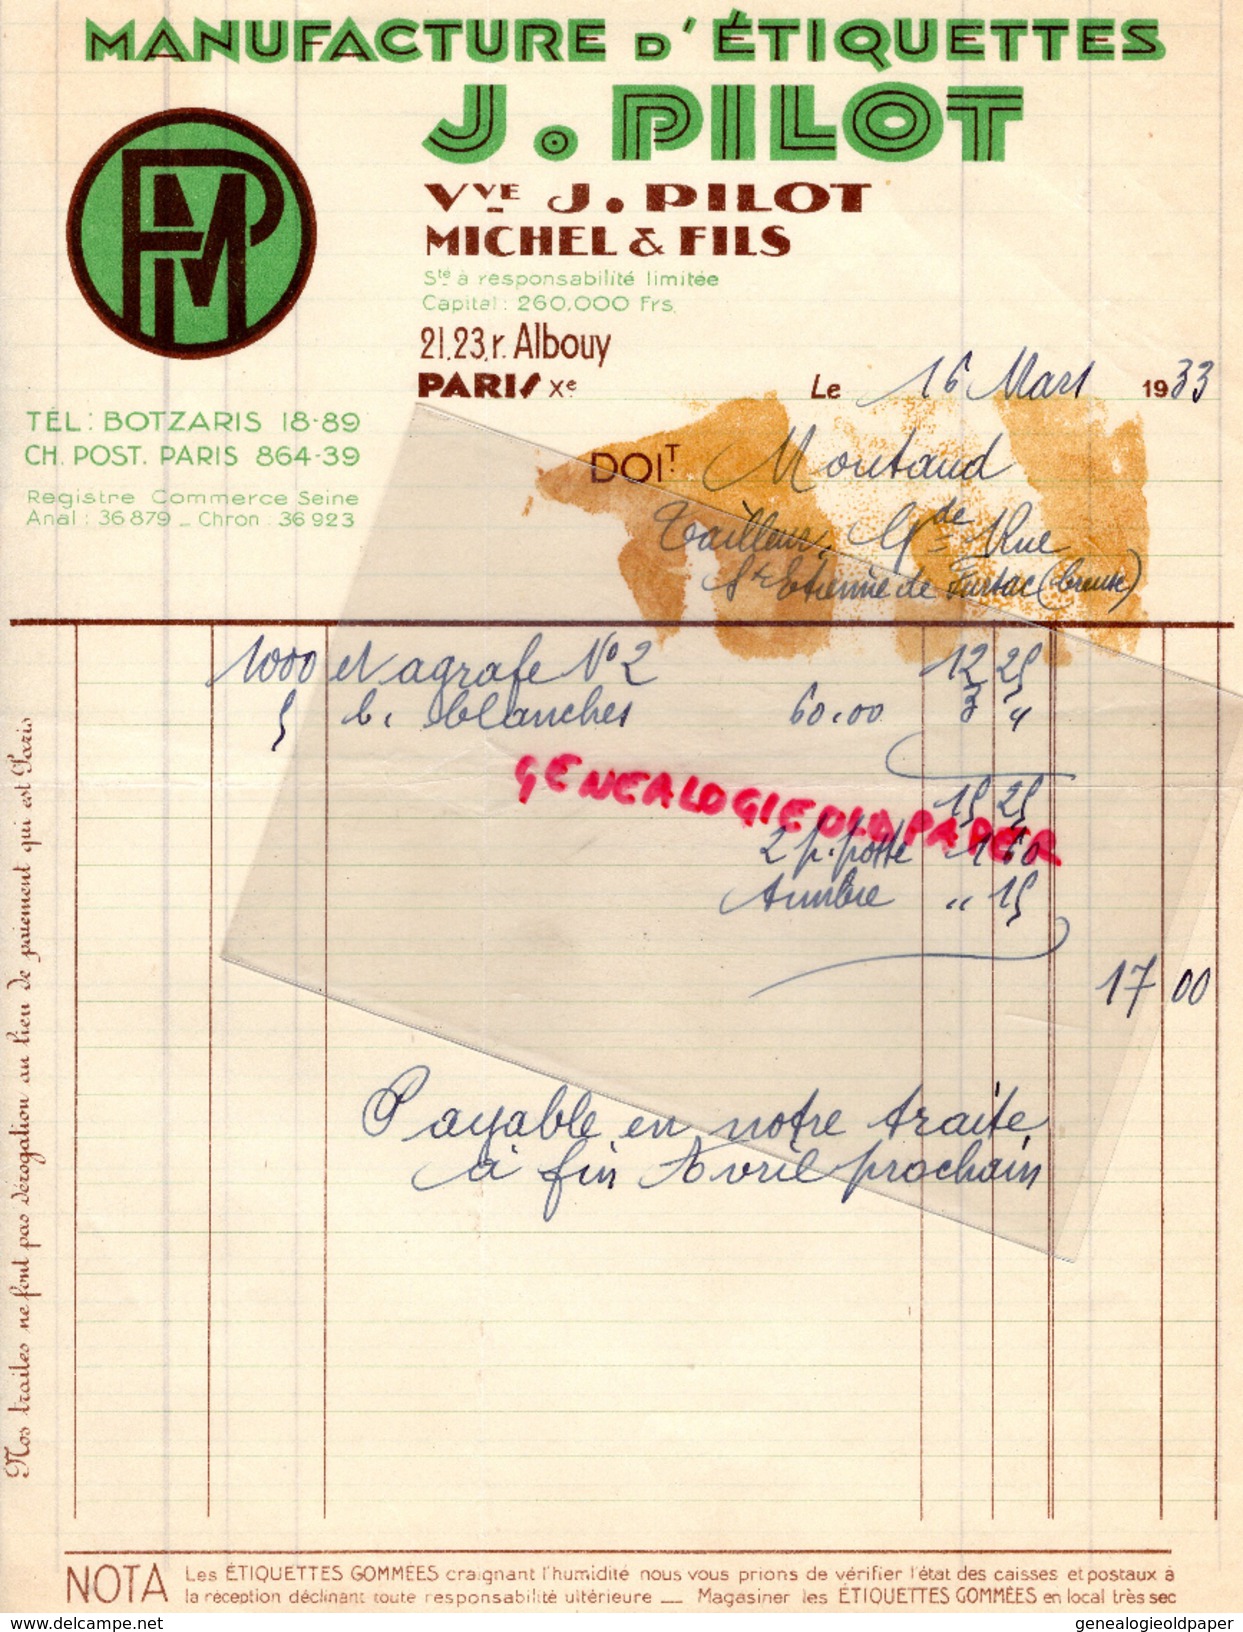 75 - PARIS - FACTURE  MANUFACTURE ETIQUETTES J. PILOT VVE J. PILOT MICHEL & FILS-21 -23 RUE ALBOUY- XE   1933 - Imprimerie & Papeterie